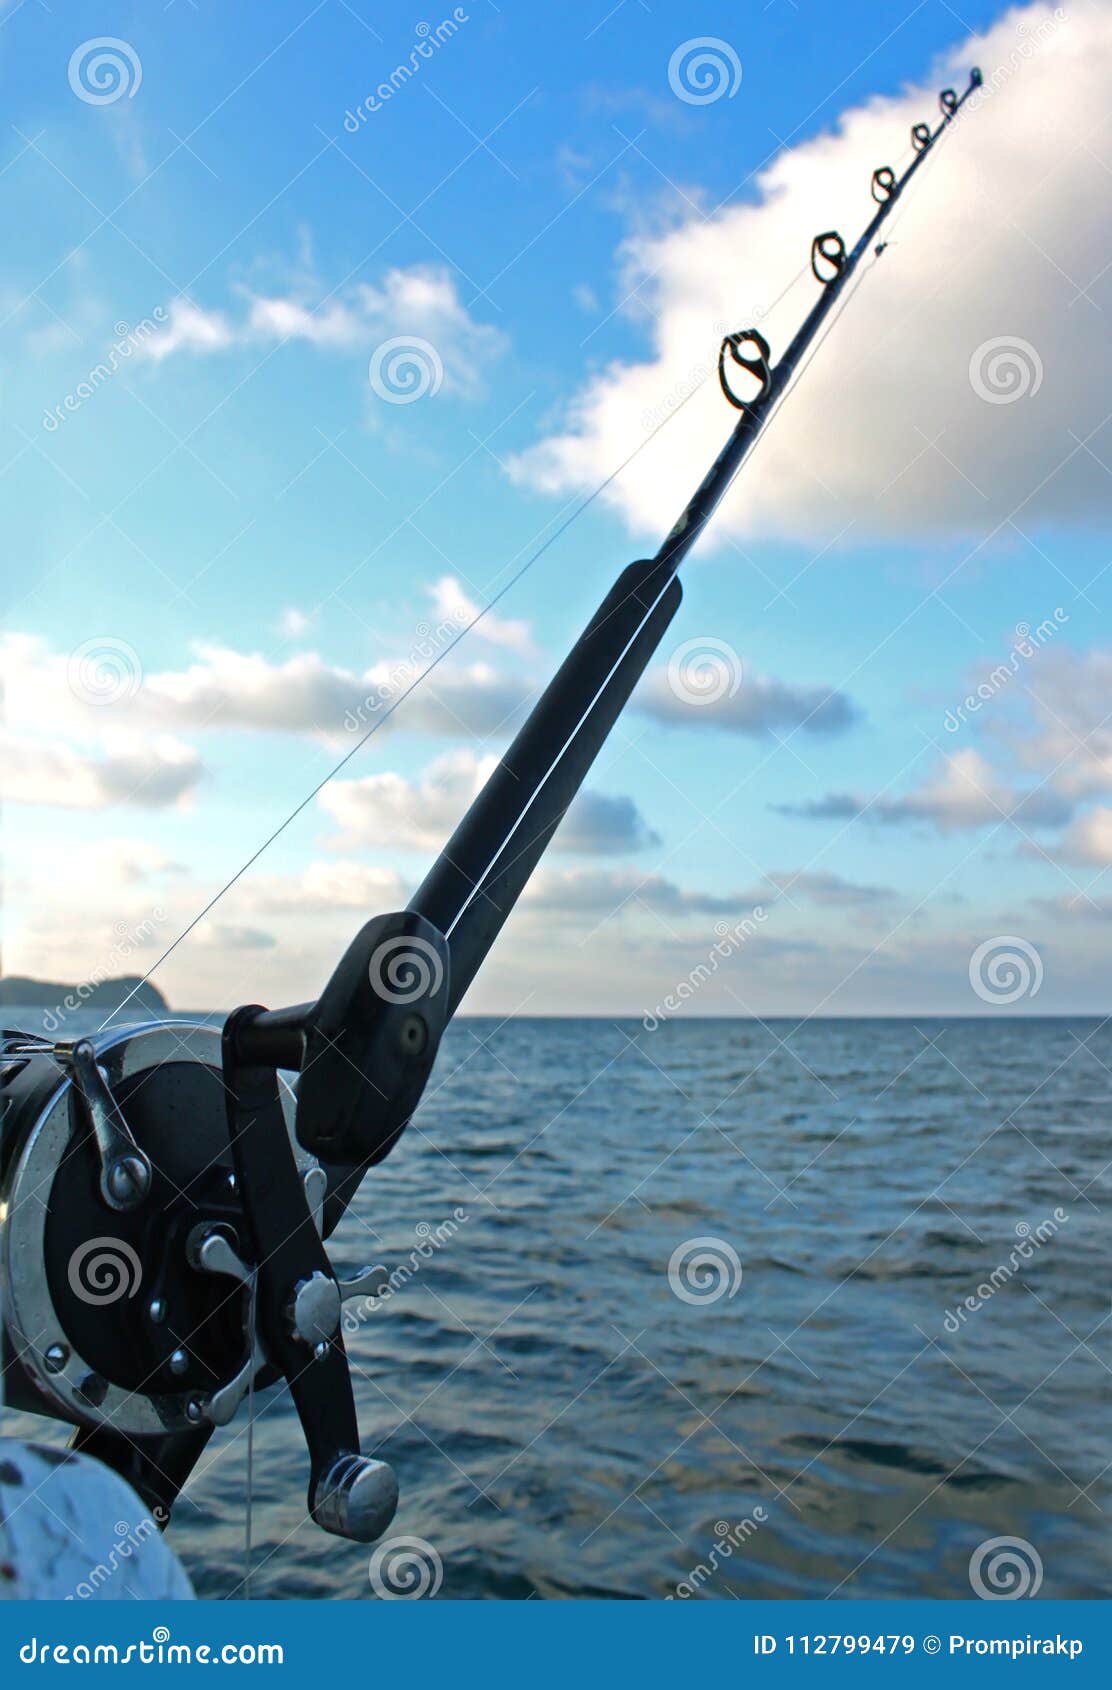 La Caña De Pescar Y El Calamar Que Cuelgan En Línea Se Preparan a La Pesca  En Alta Mar En El Barco En El Océano Foto de archivo - Imagen de cubo